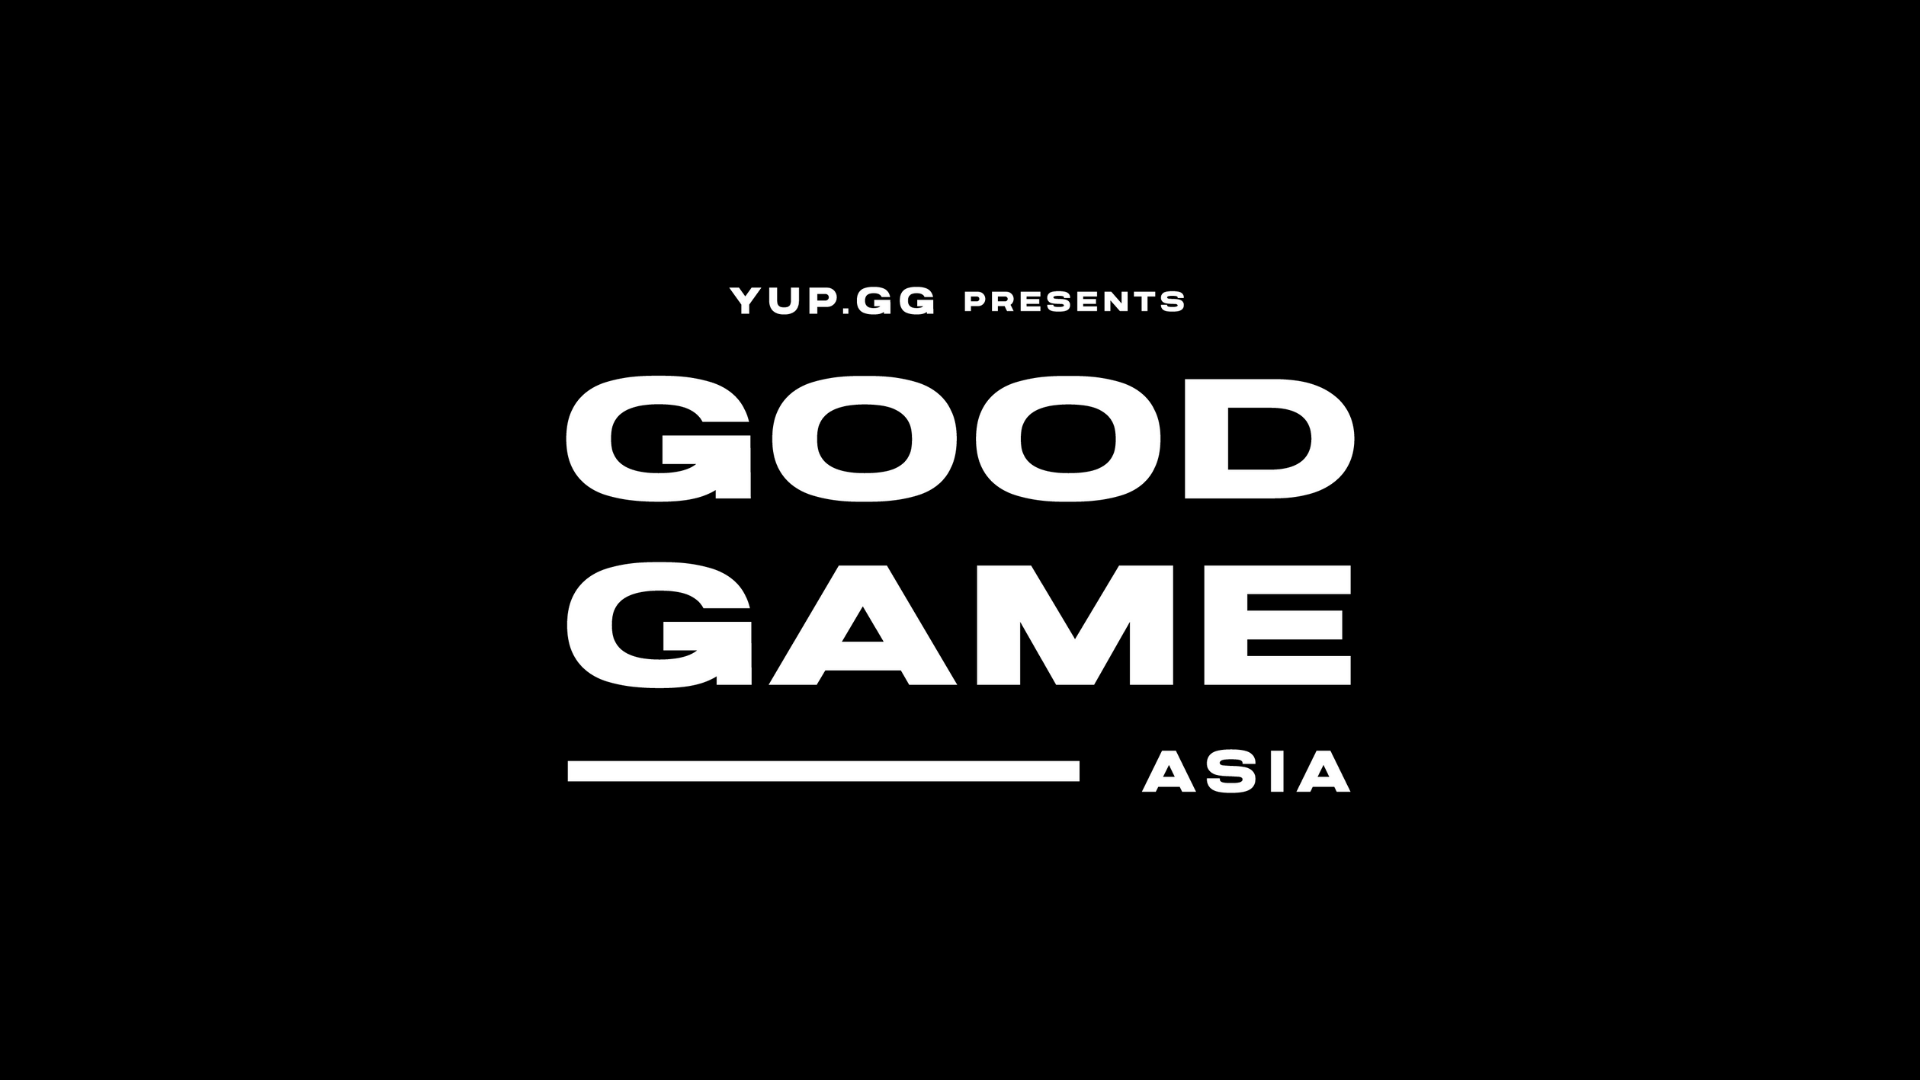 GOOD GAME ASIA รายการทีวีเรียลลิตี้ใหม่ล่าสุดของ Yup.gg มาถึงแล้วทาง WarnerTV ในเดือนมิถุนายนนี้ สนับสนุนโดย ONE Esports